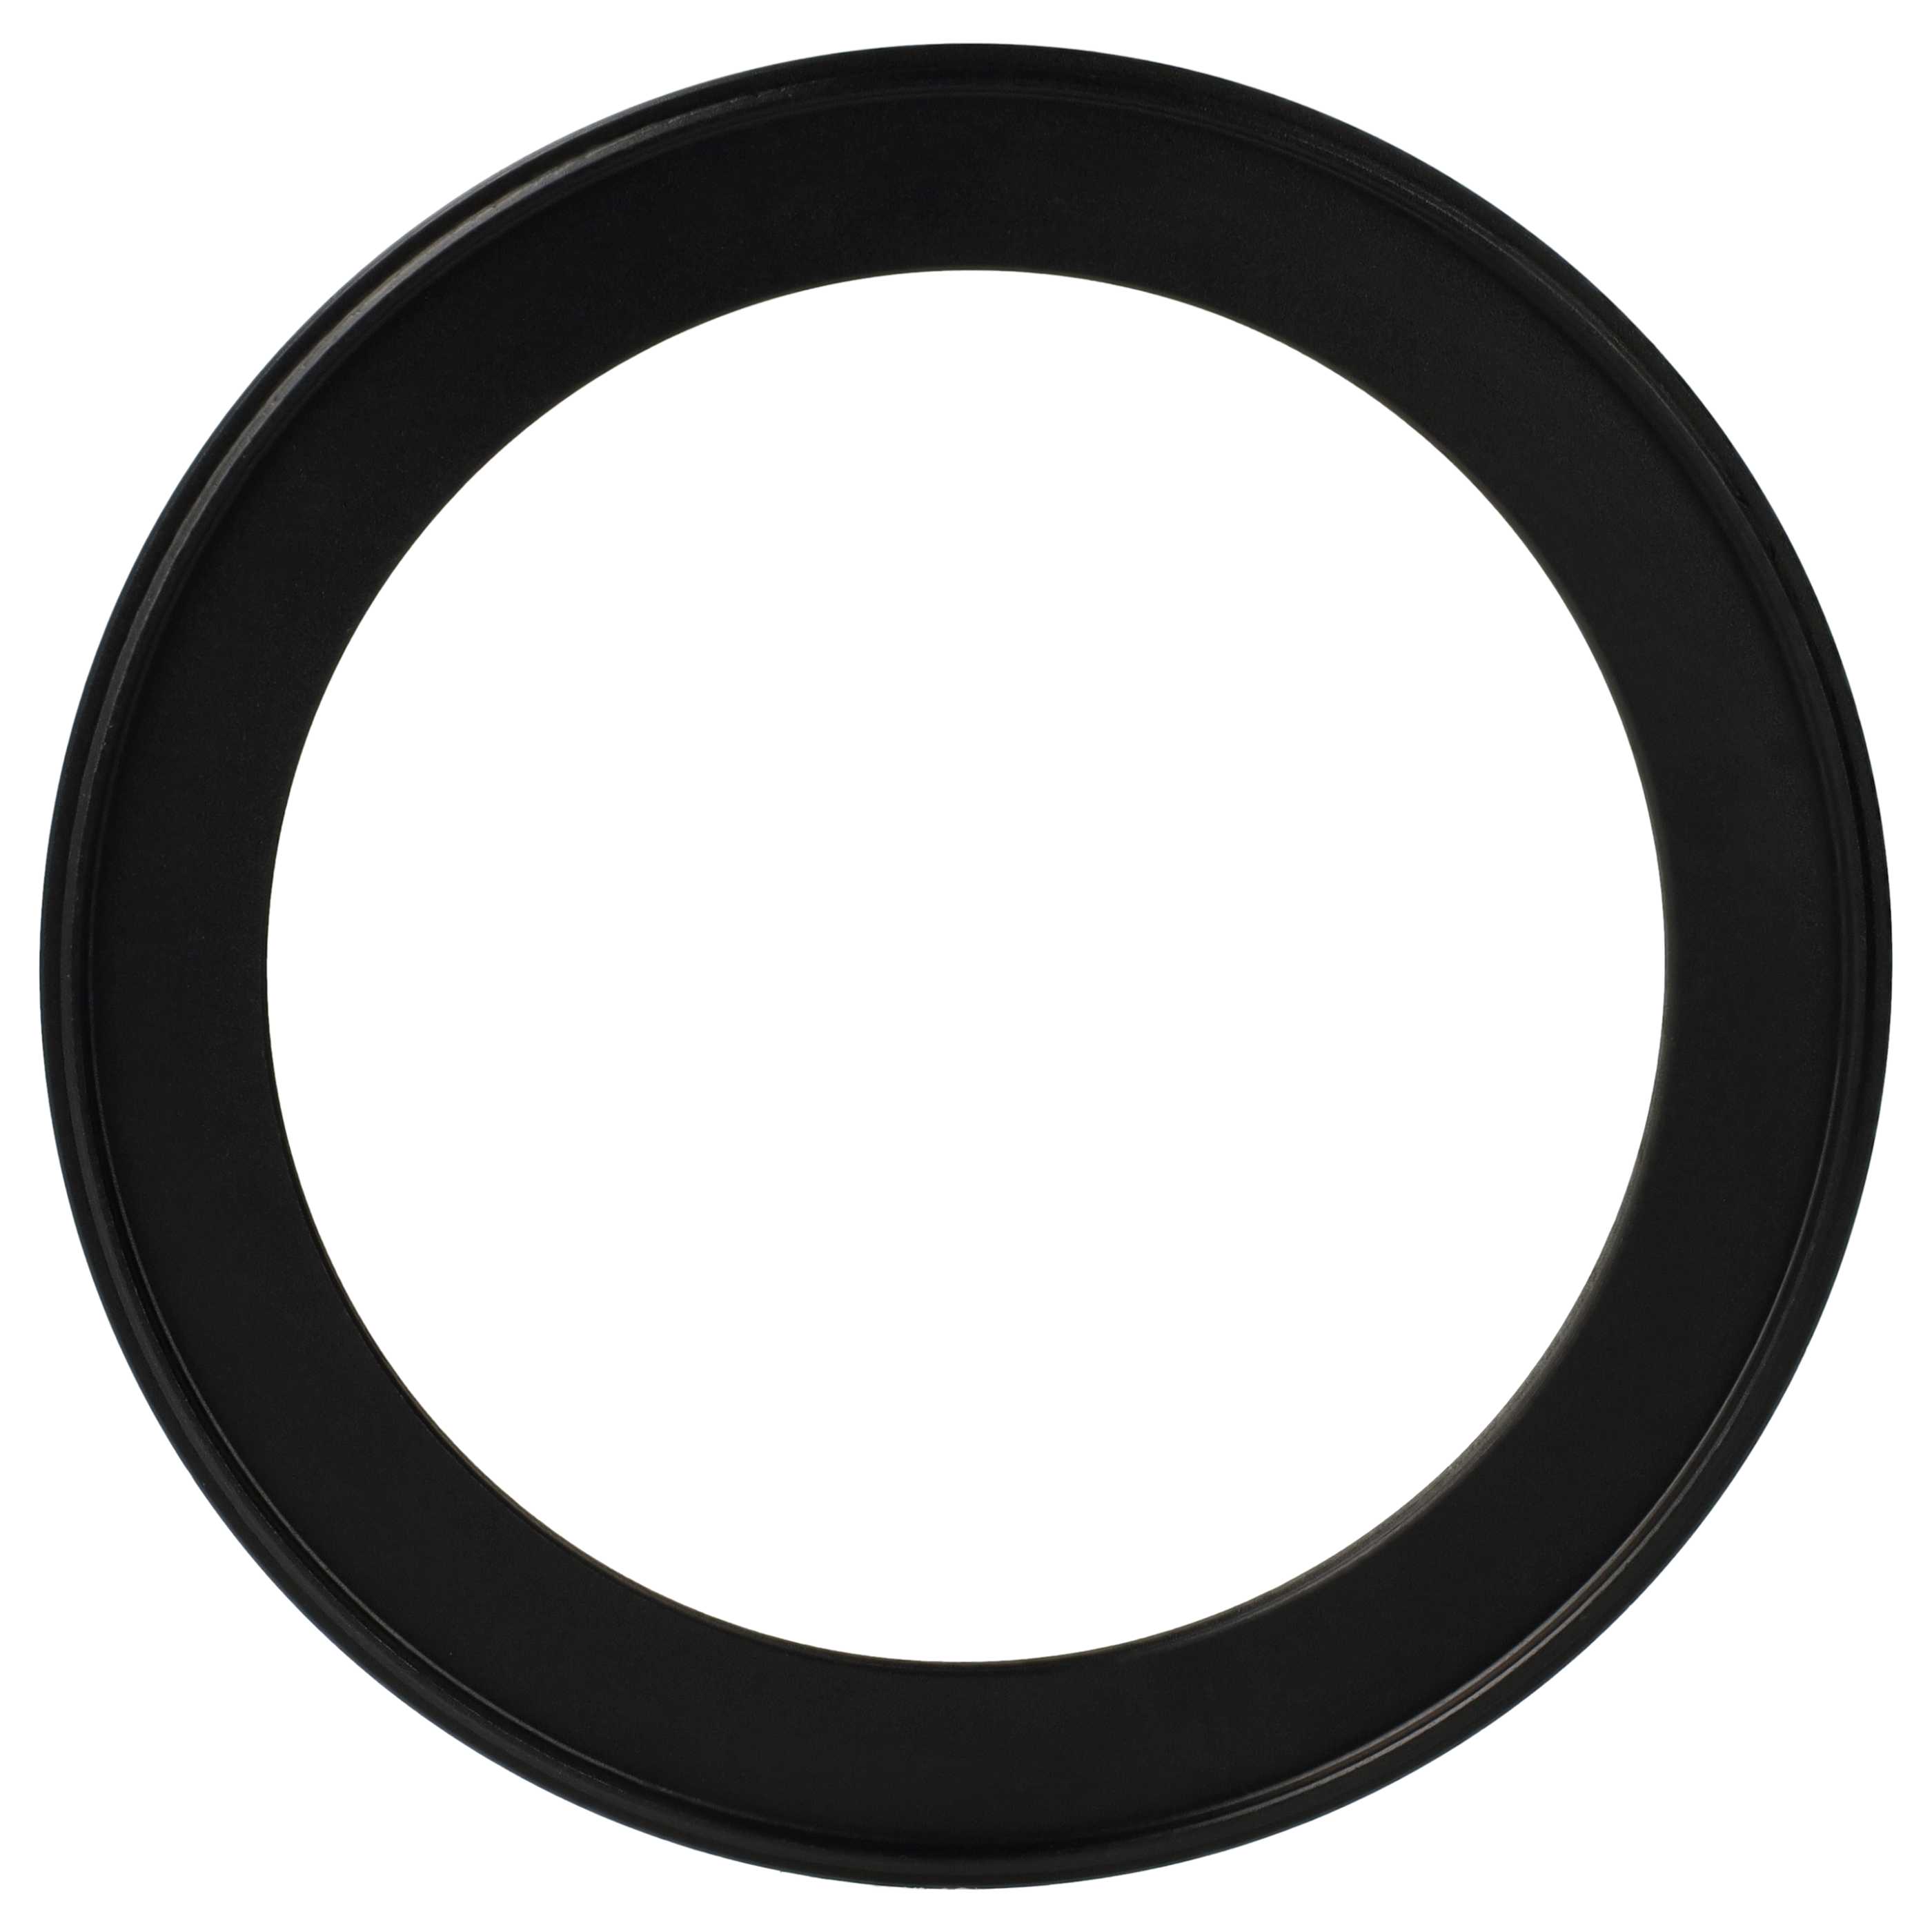 Step-Down-Ring Adapter von 105 mm auf 82 mm passend für Kamera Objektiv - Filteradapter, Metall, schwarz